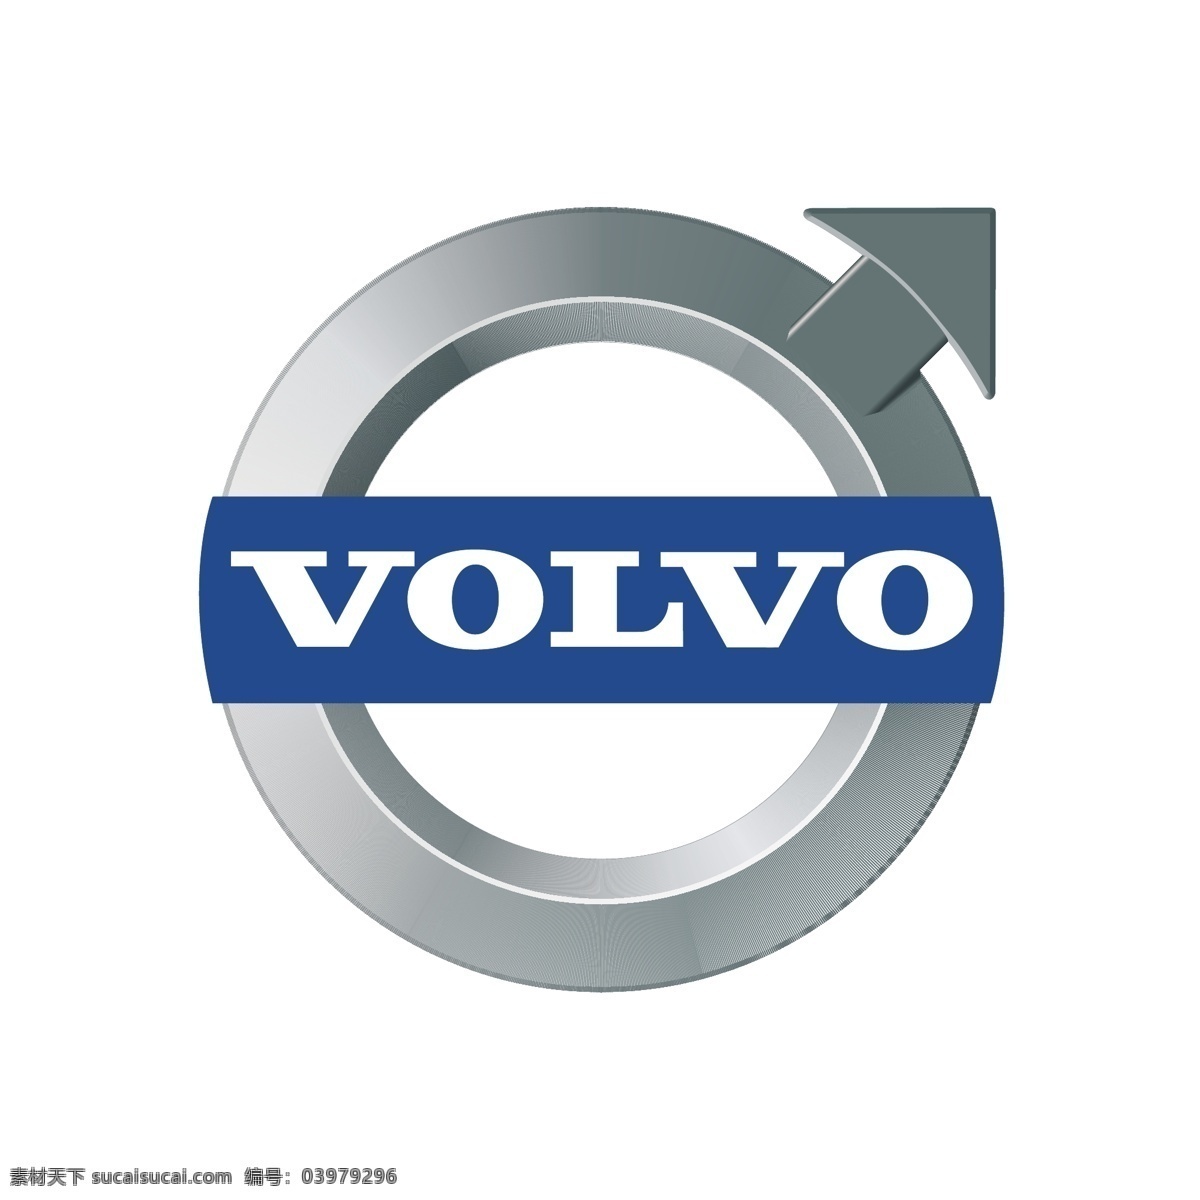 矢量 沃尔沃 logo 模板下载 沃尔沃标志 标志 汽车 世界品牌 知名品牌 psd源文件 文件 源文件